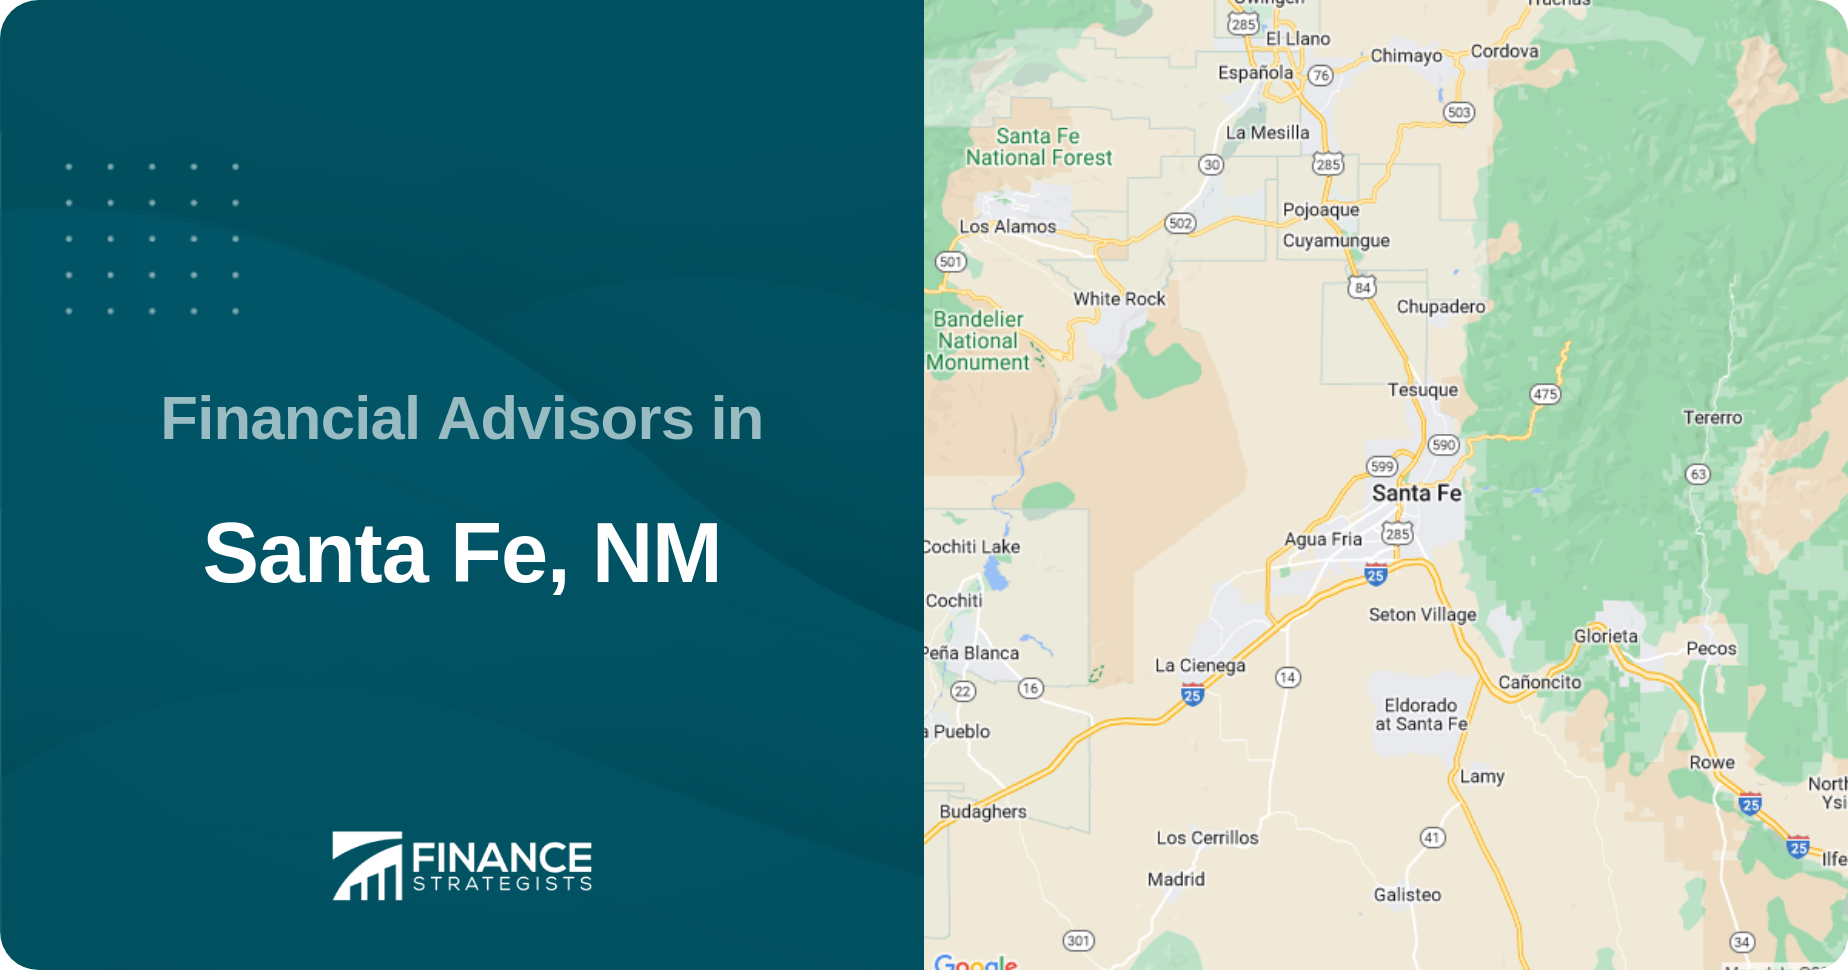 Financial Advisors in Santa Fe, NM